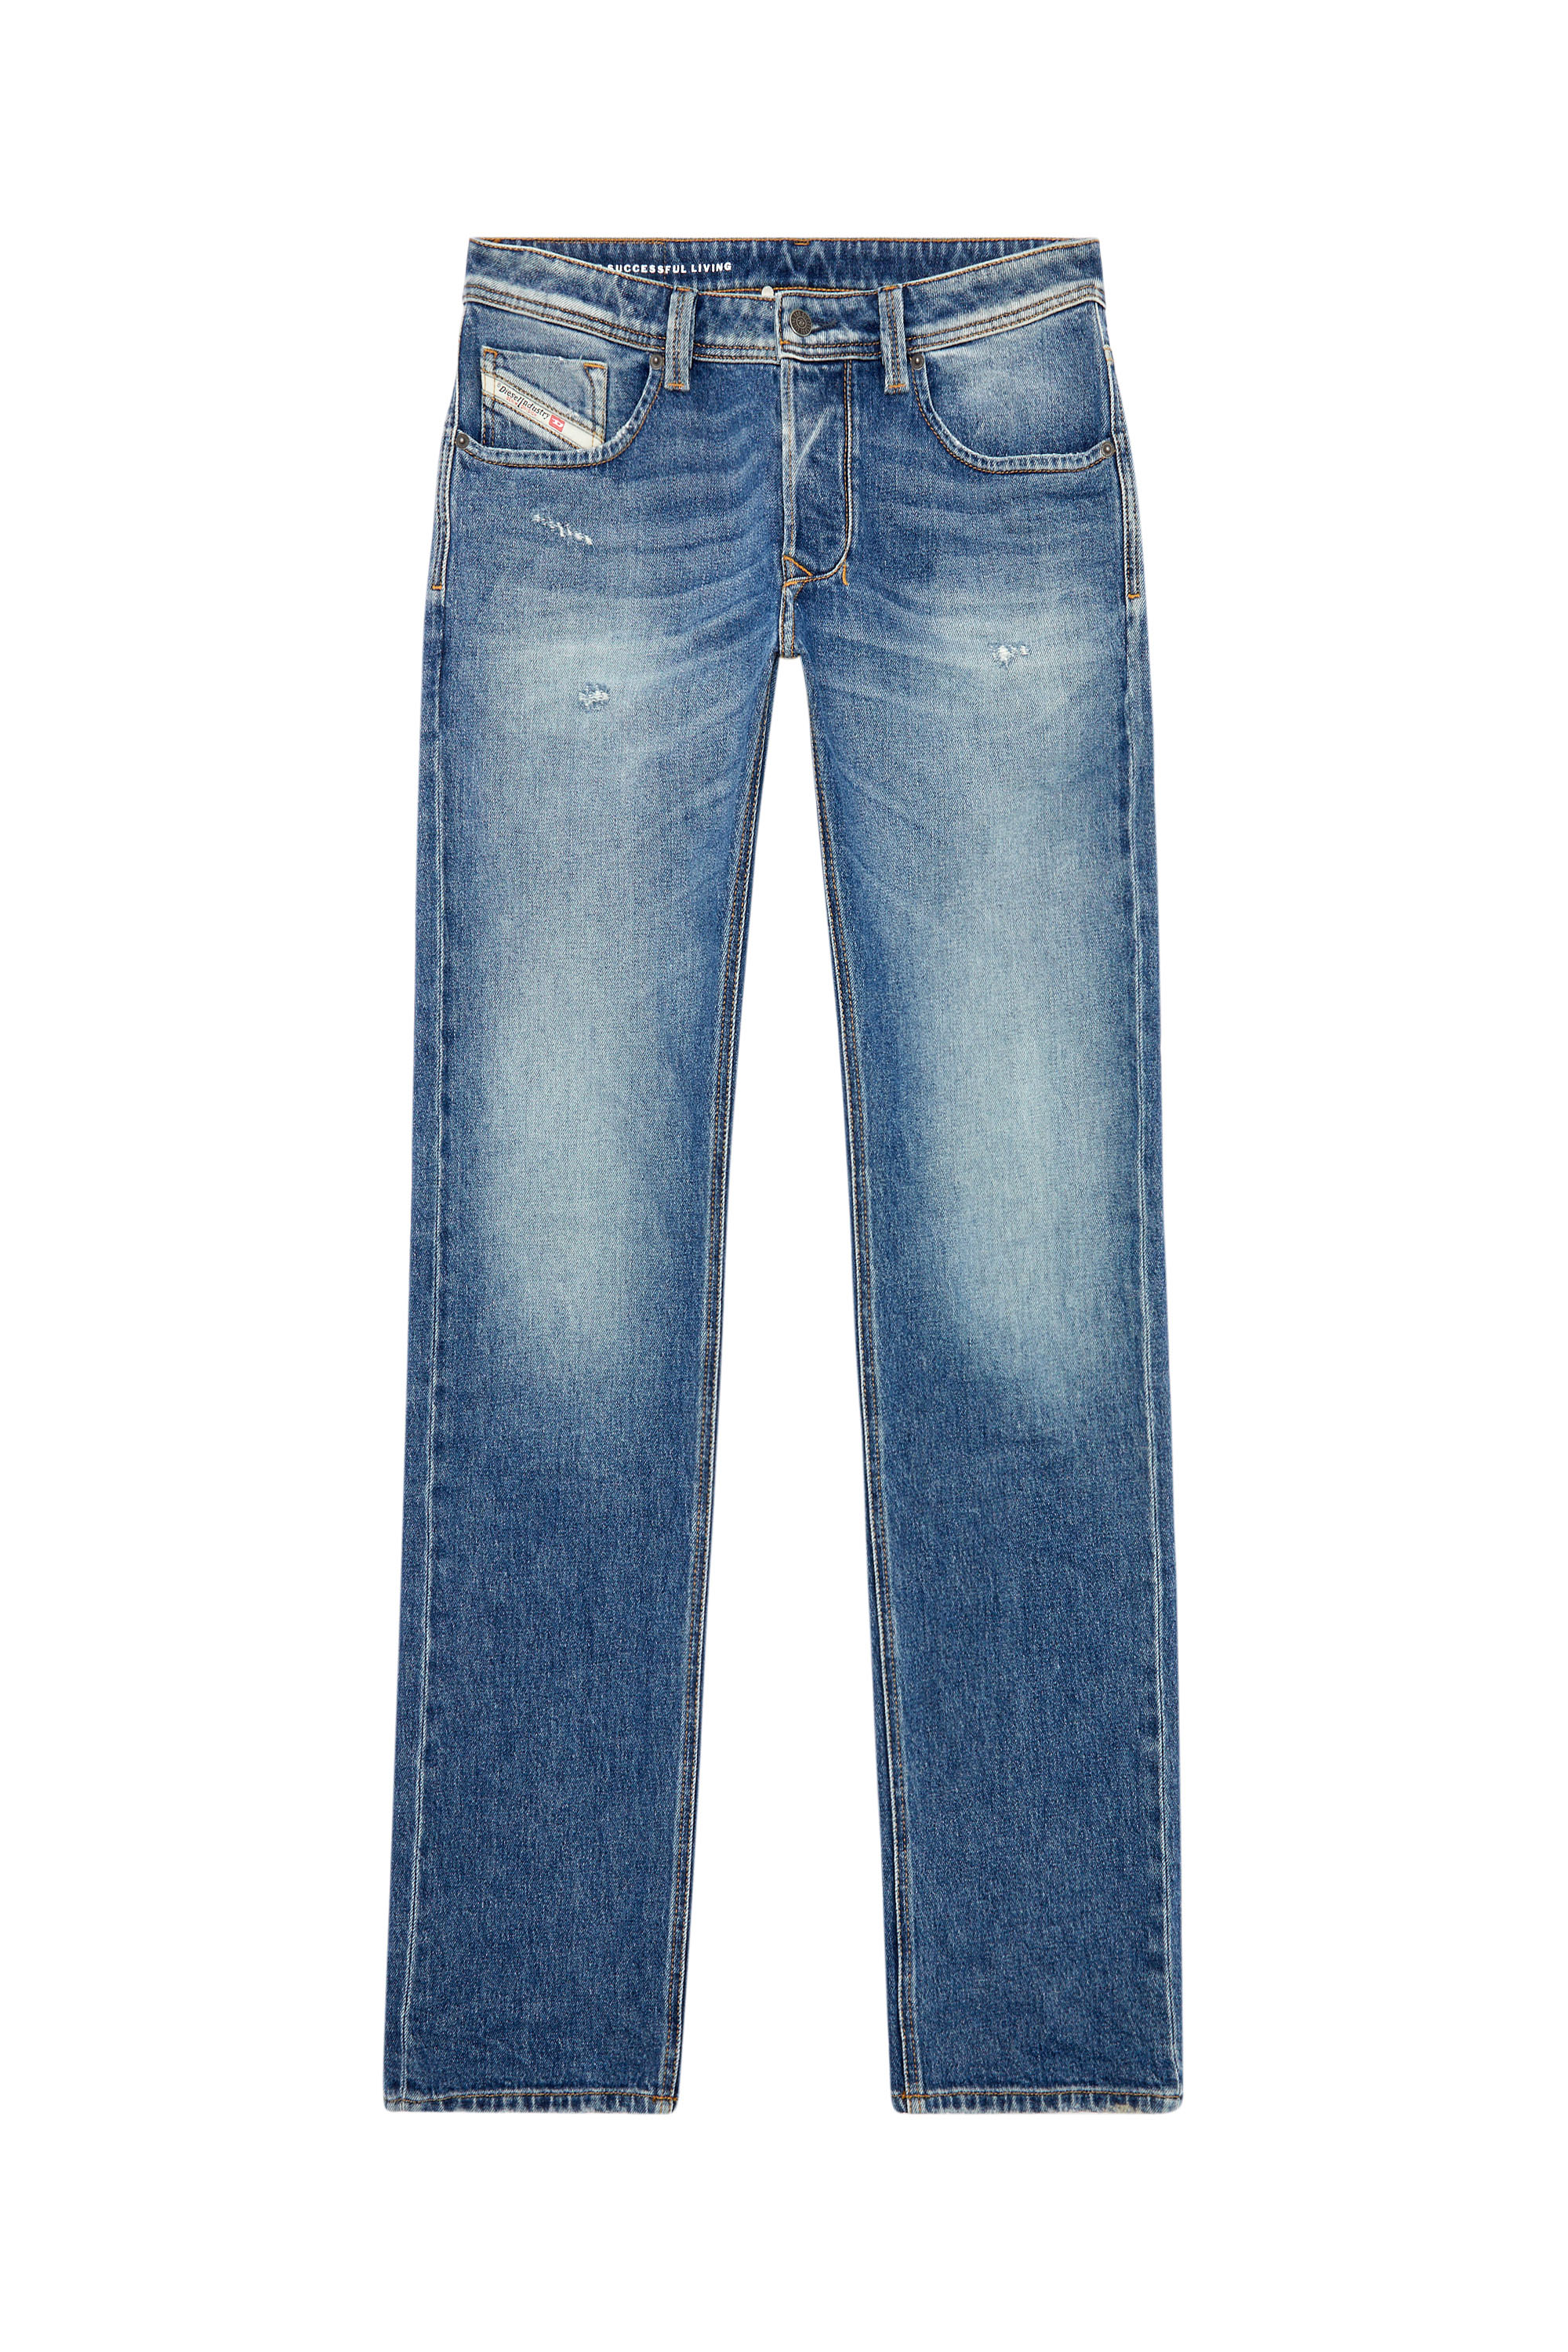 Diesel - Straight Jeans 1985 Larkee 09I16, Medium blue - Image 1